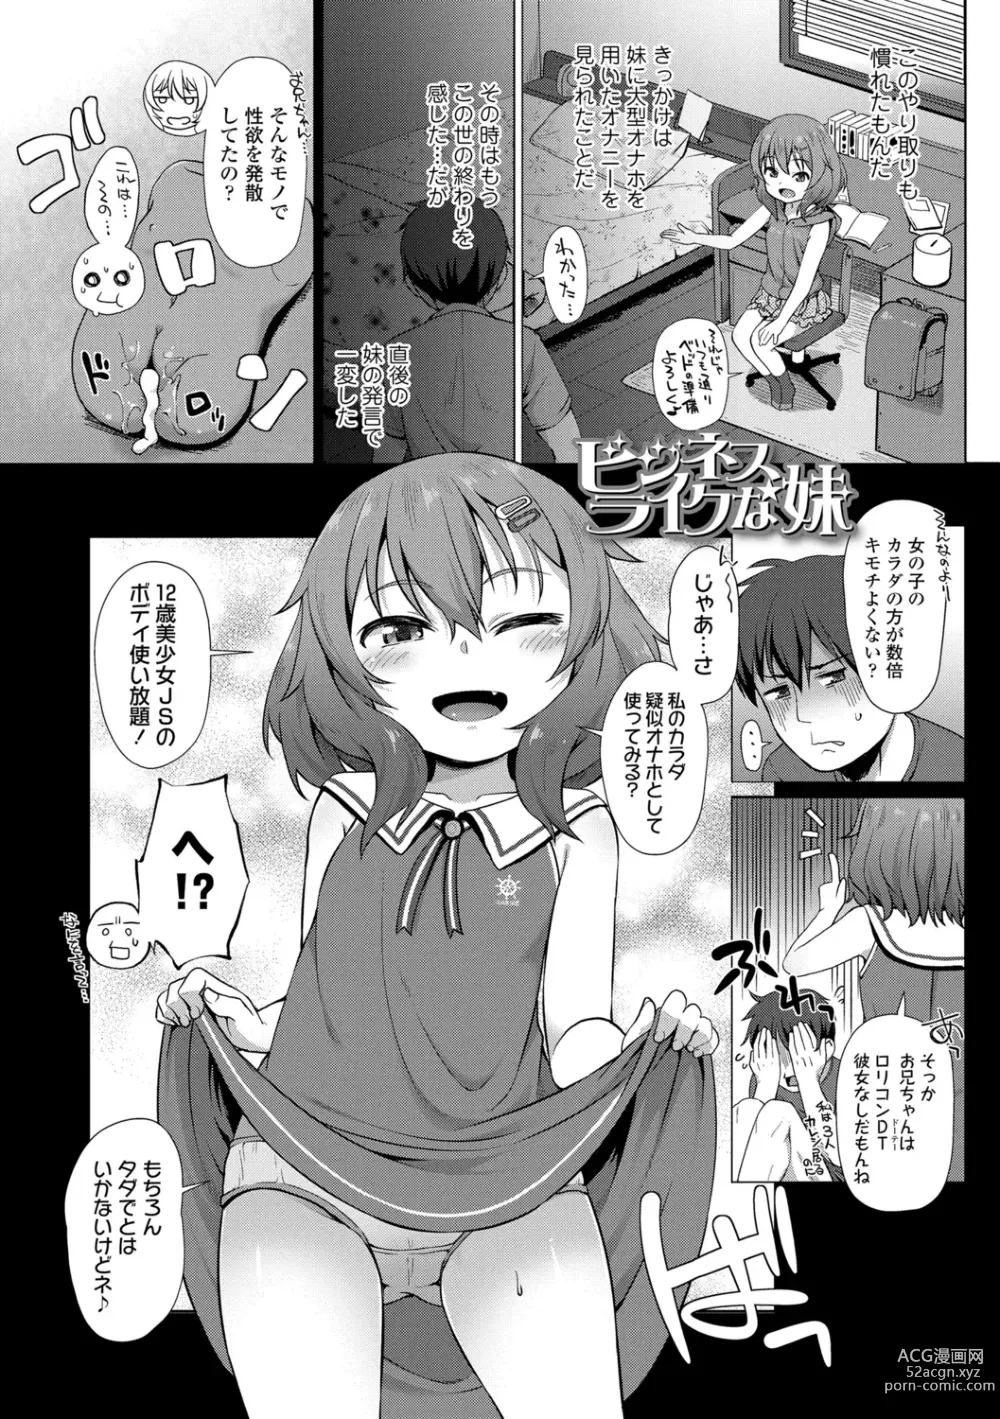 Page 6 of manga Chiisai Ana wa Dou desu ka?